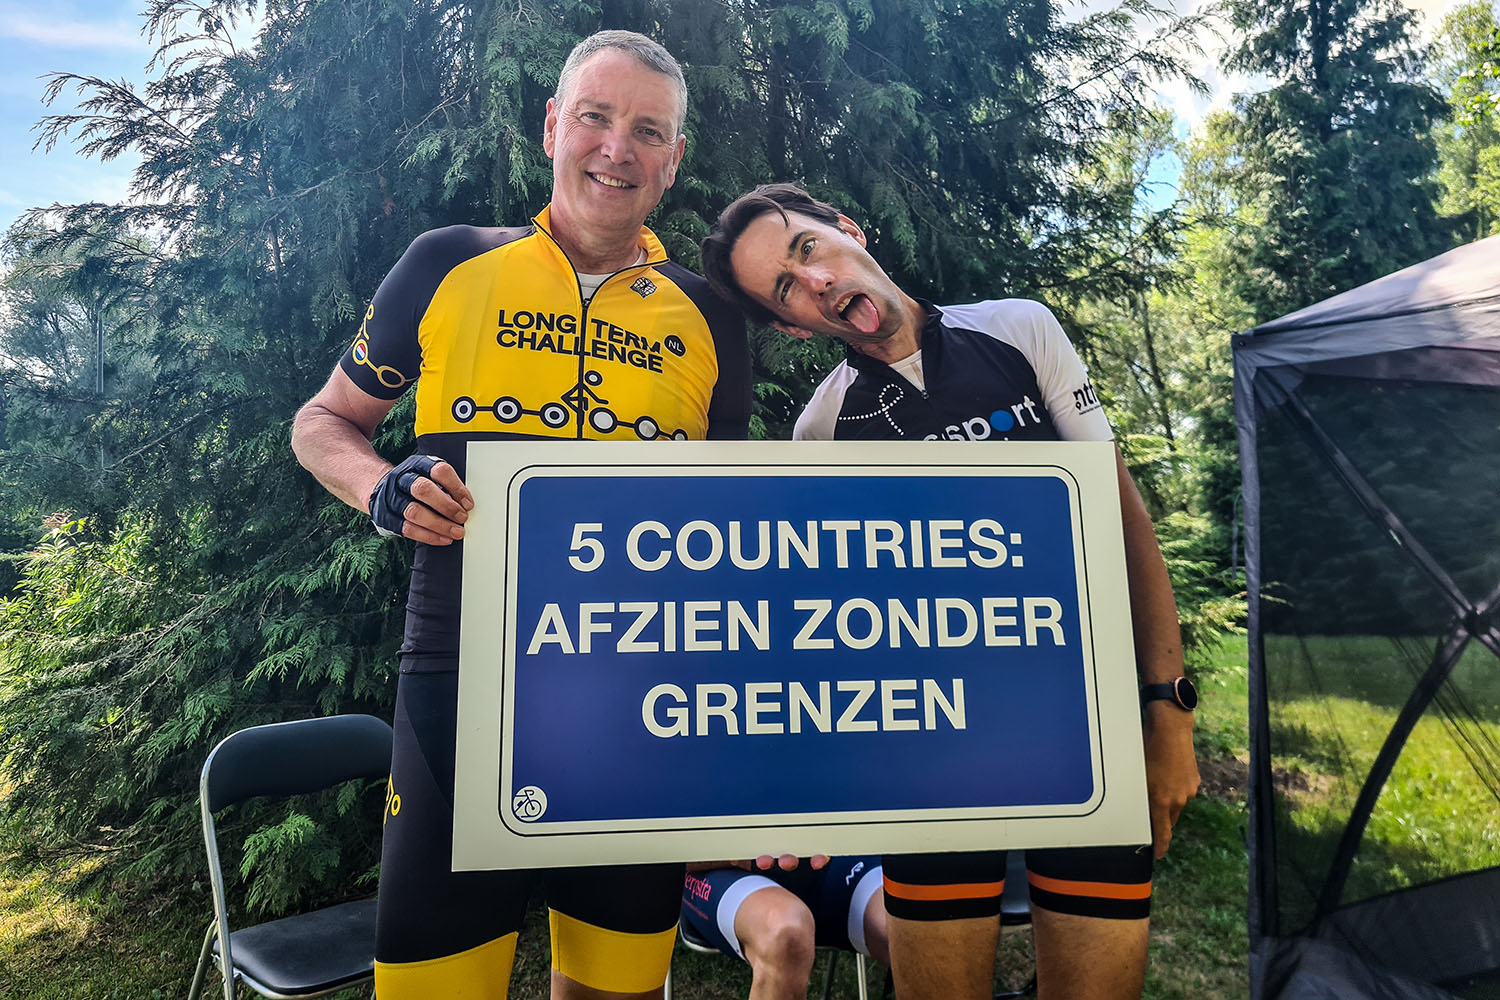 five countries fietsers houden bord vast met five countries afzien zonder grenzen